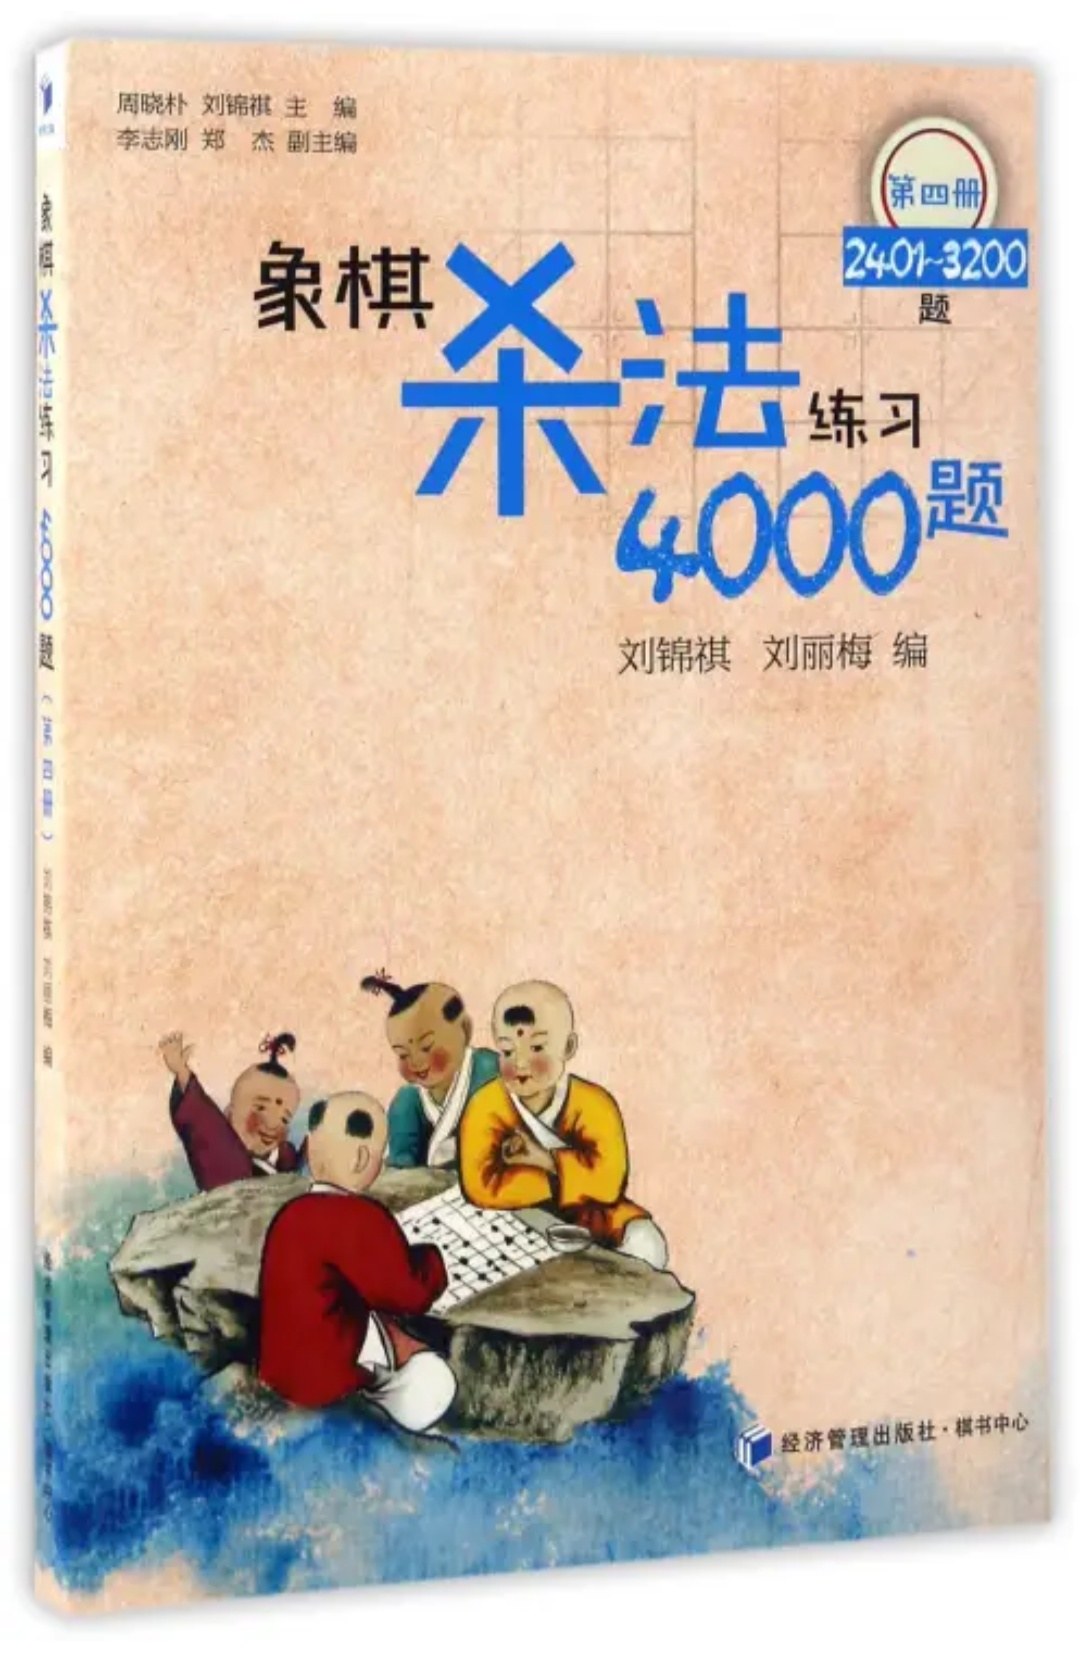 象棋杀法练习4000题 第四册 2401-3200题